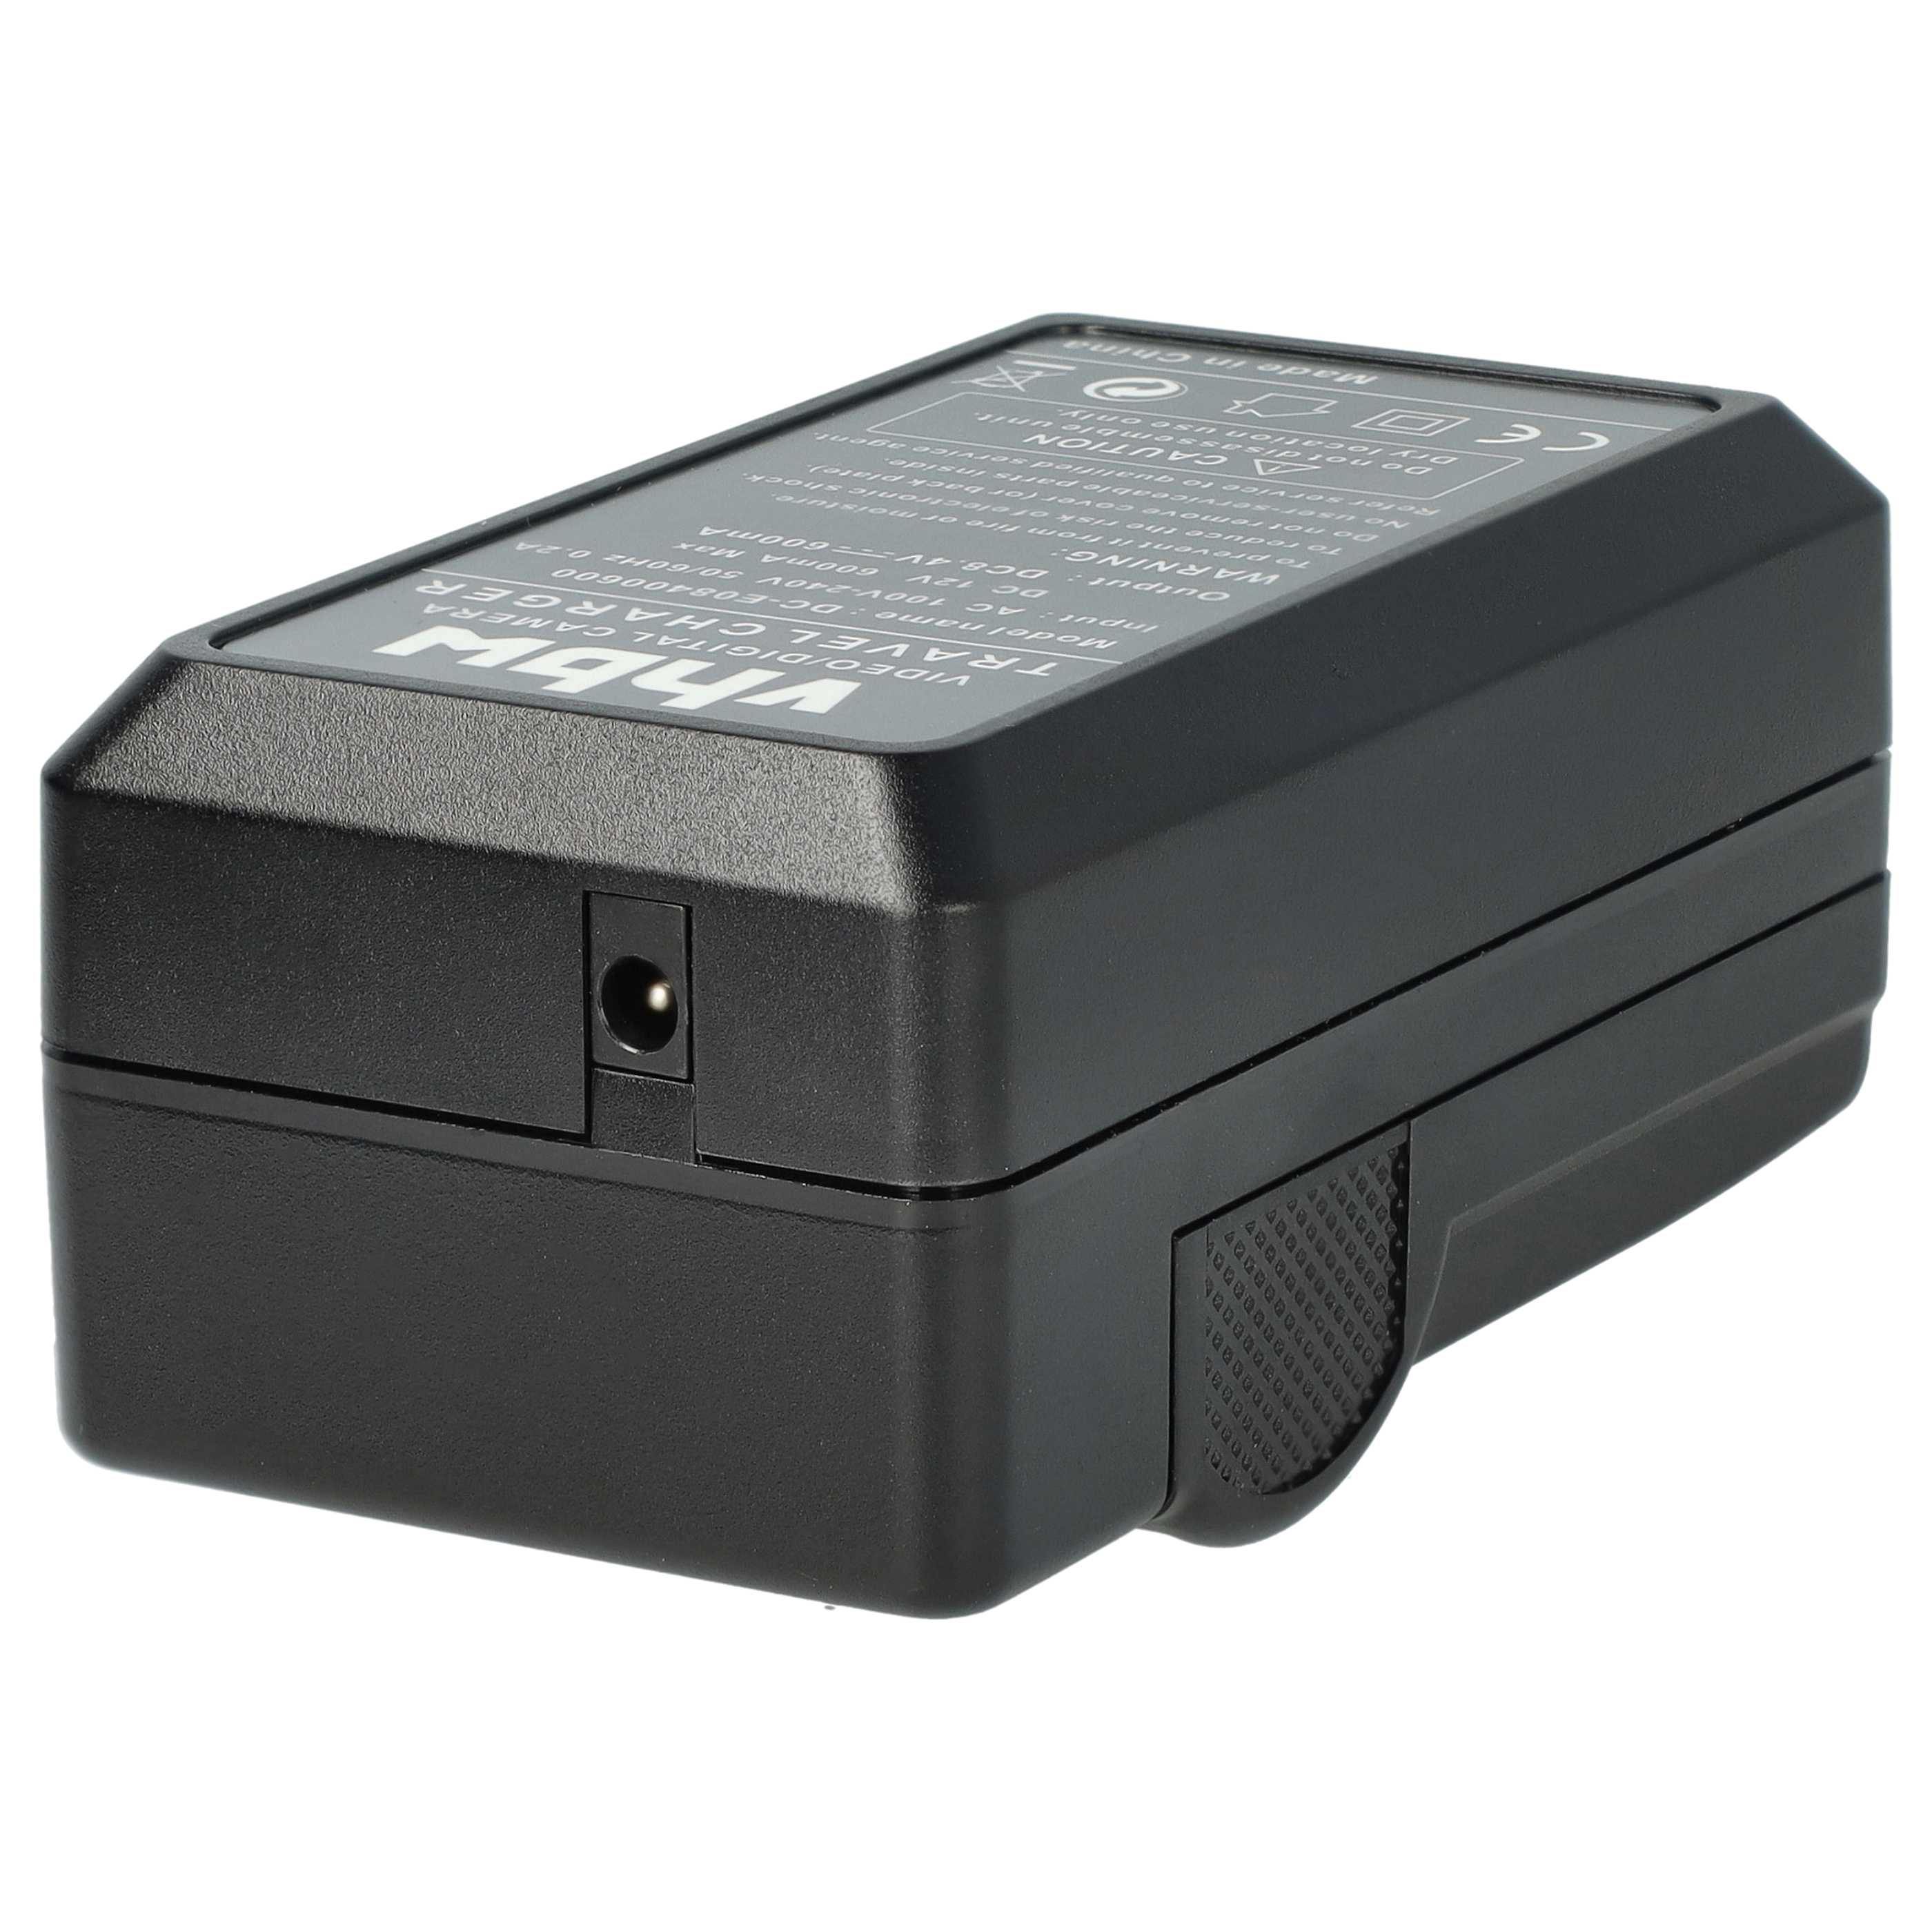 Akku Ladegerät passend für AG-AC8 Kamera u.a. - 0,6 A, 8,4 V